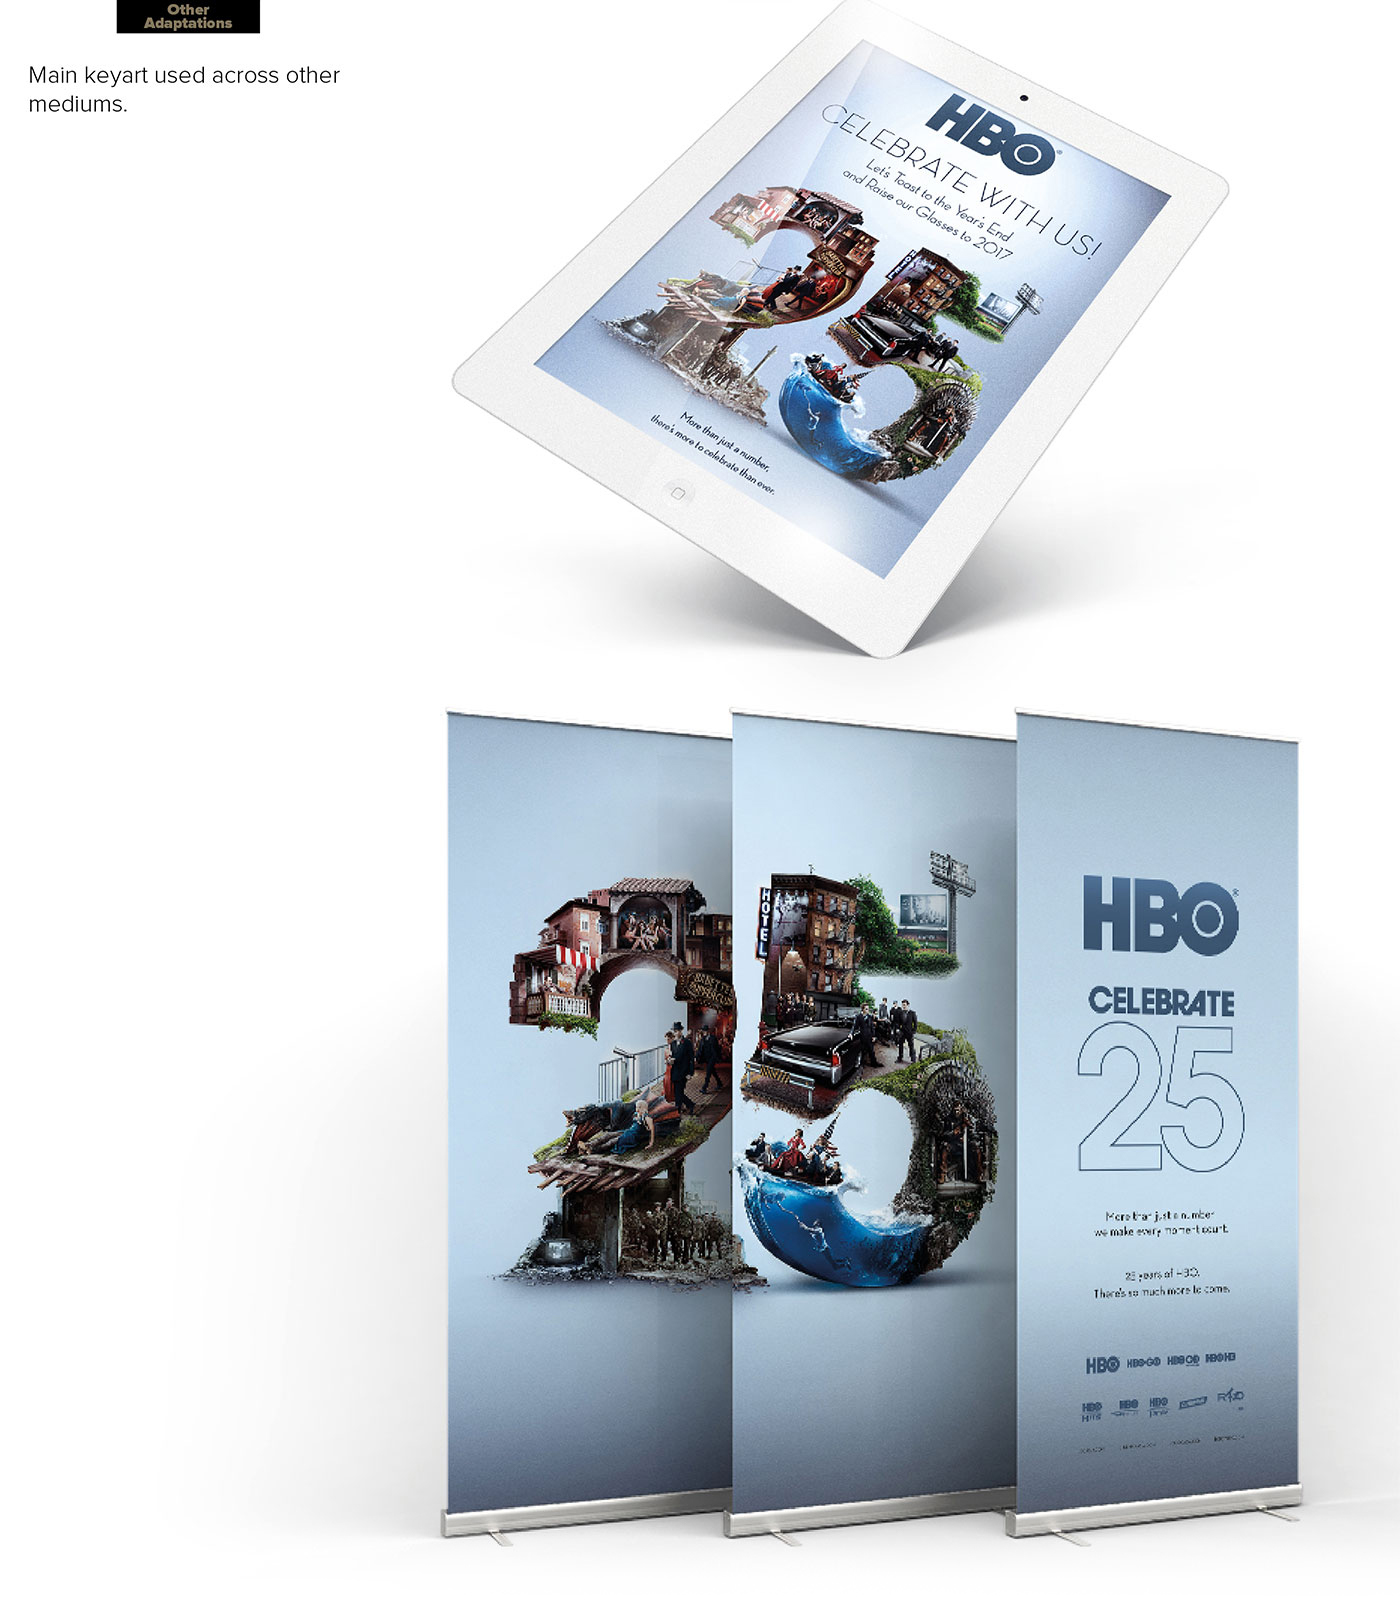 ars thanea 25th HBO Asia typography   No 25 anniversary hbo Game of Thrones Sopranos entourage